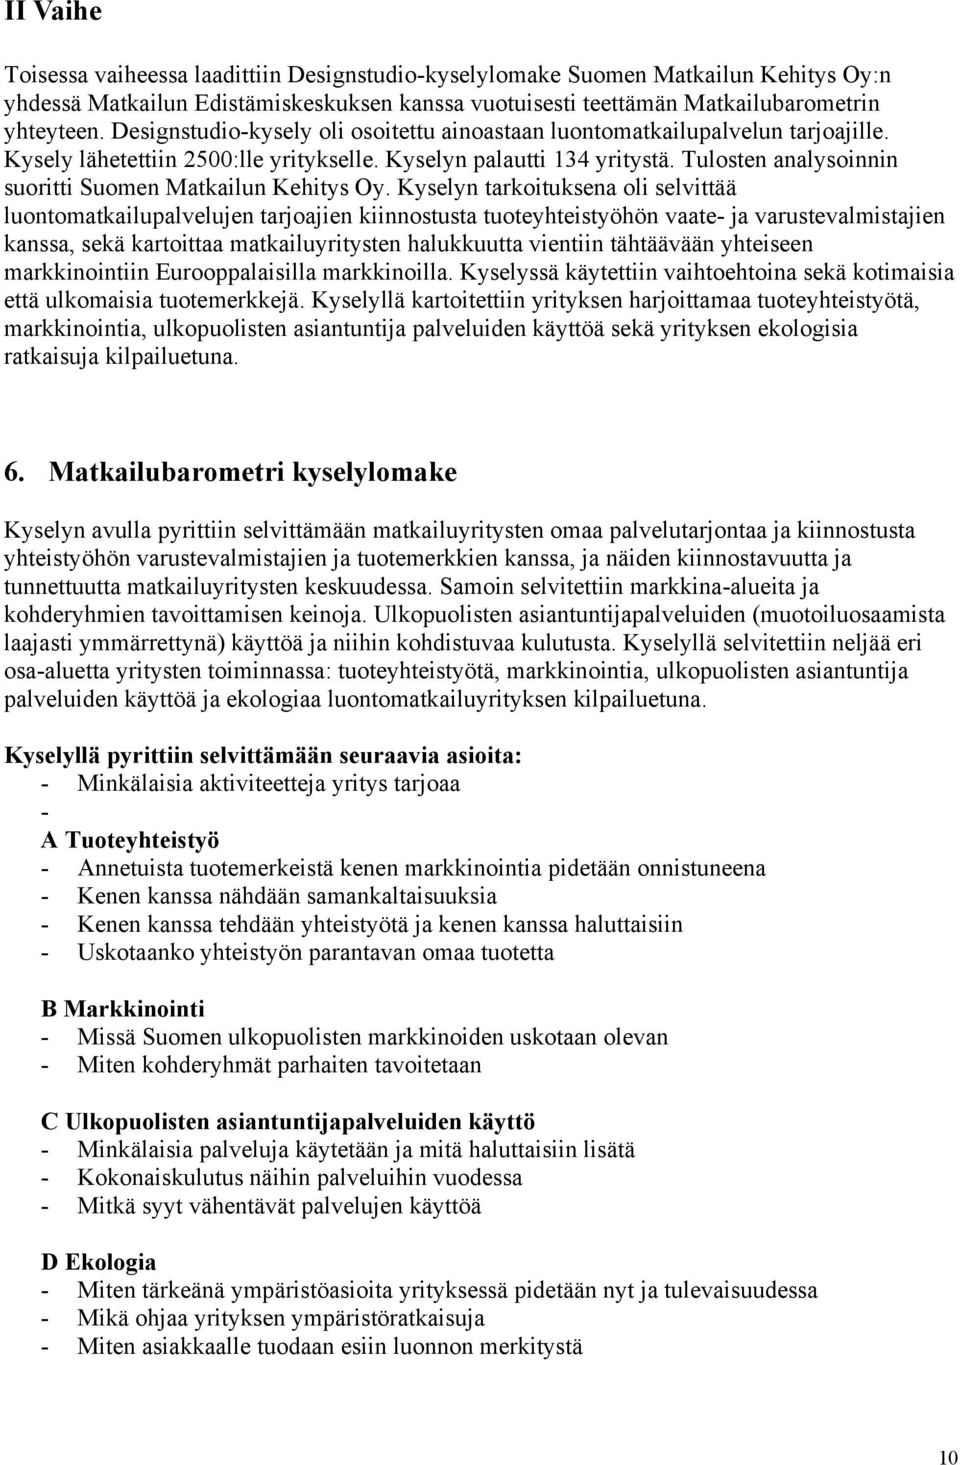 Tulosten analysoinnin suoritti Suomen Matkailun Kehitys Oy.